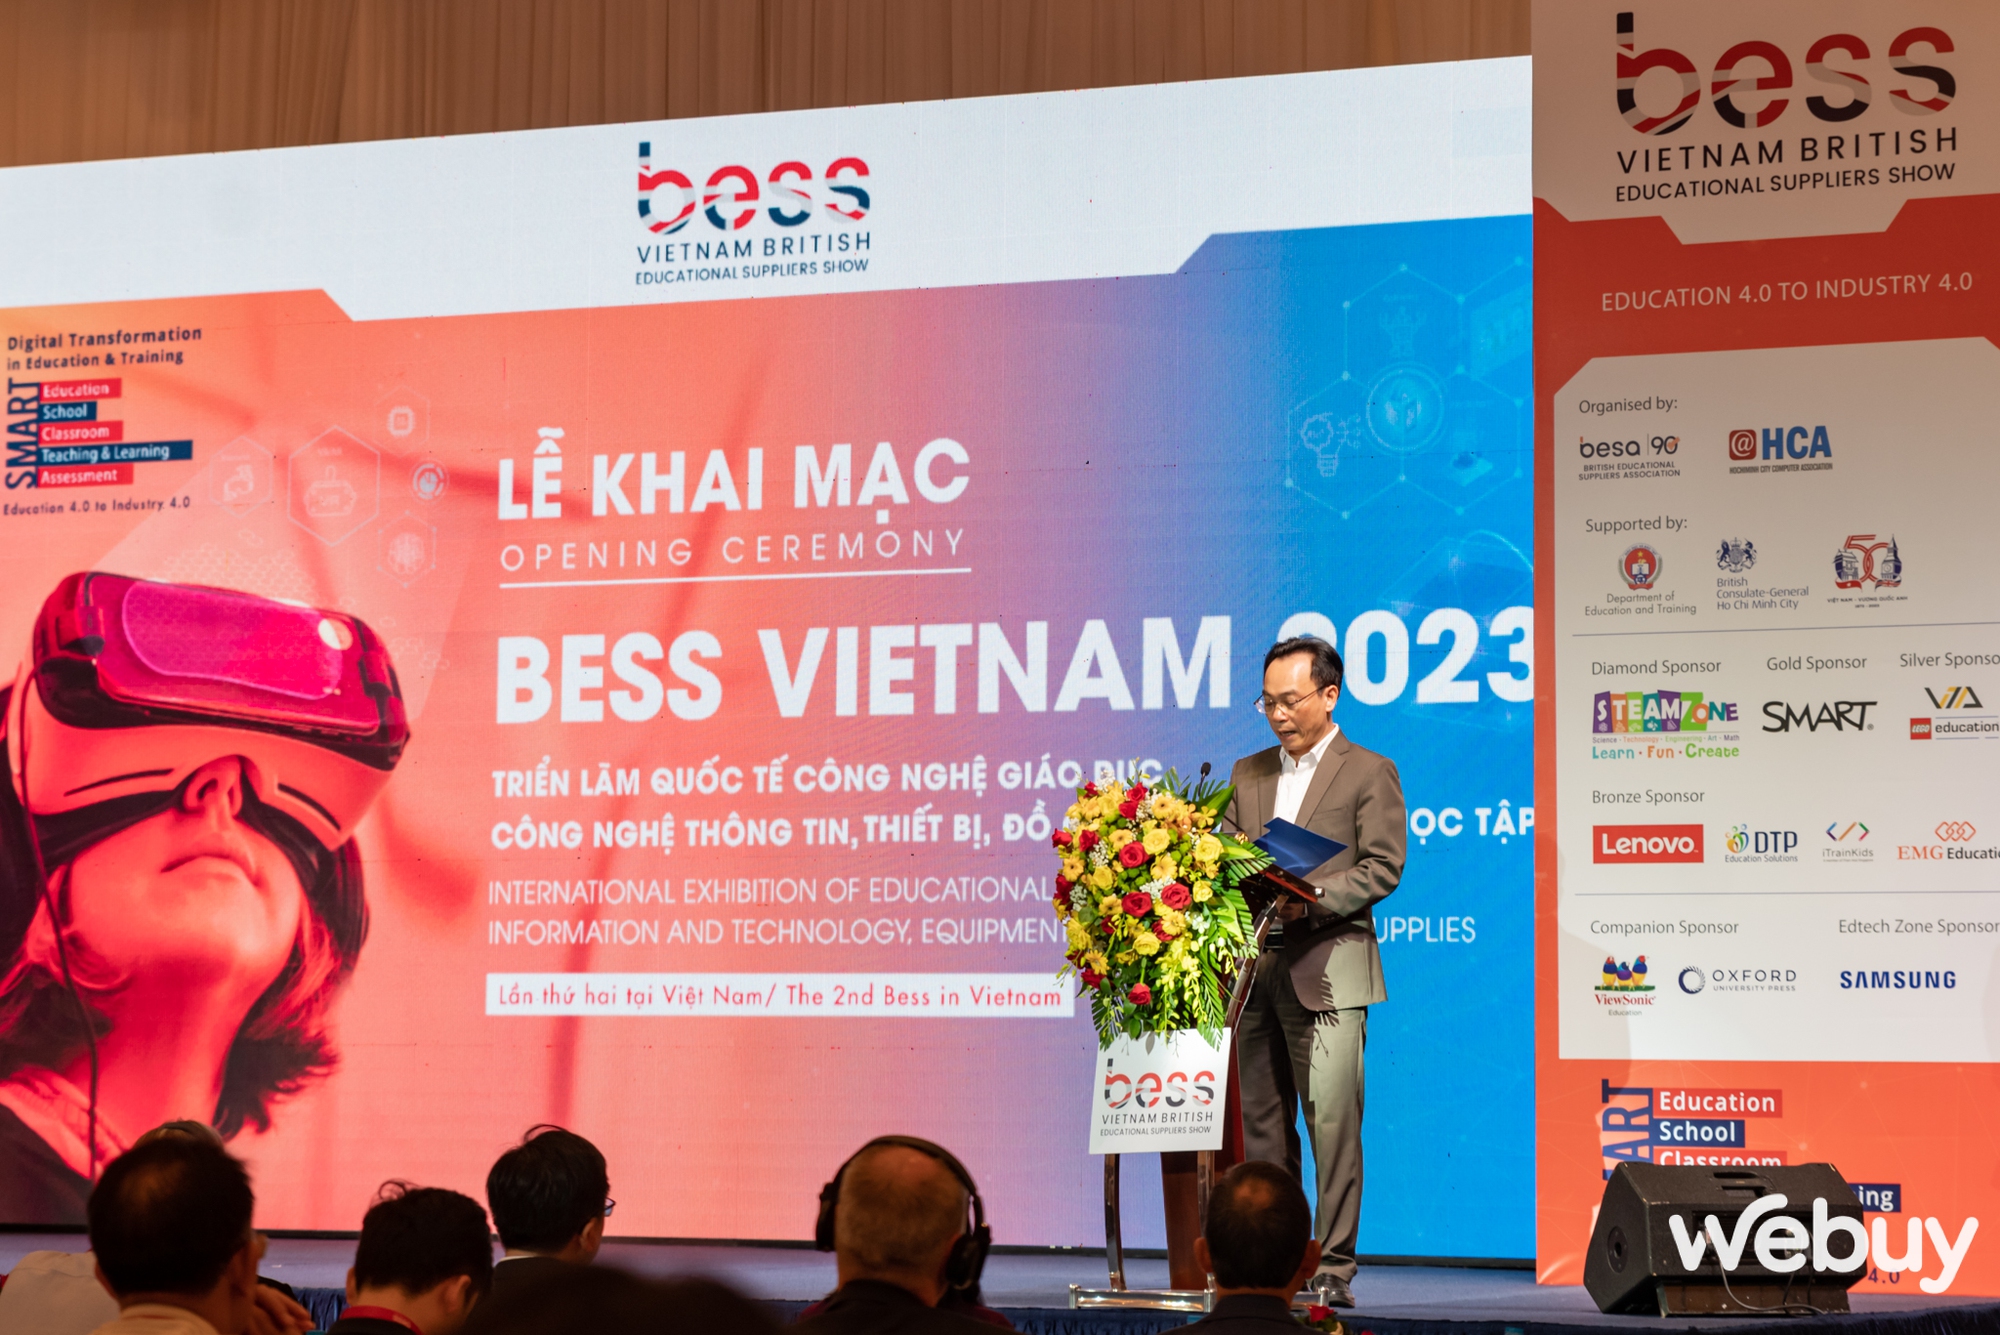 Samsung giới thiệu hàng loạt các thiết bị thông minh, giải pháp công nghệ dành cho giáo dục tại BESS Việt Nam 2023 - Ảnh 1.